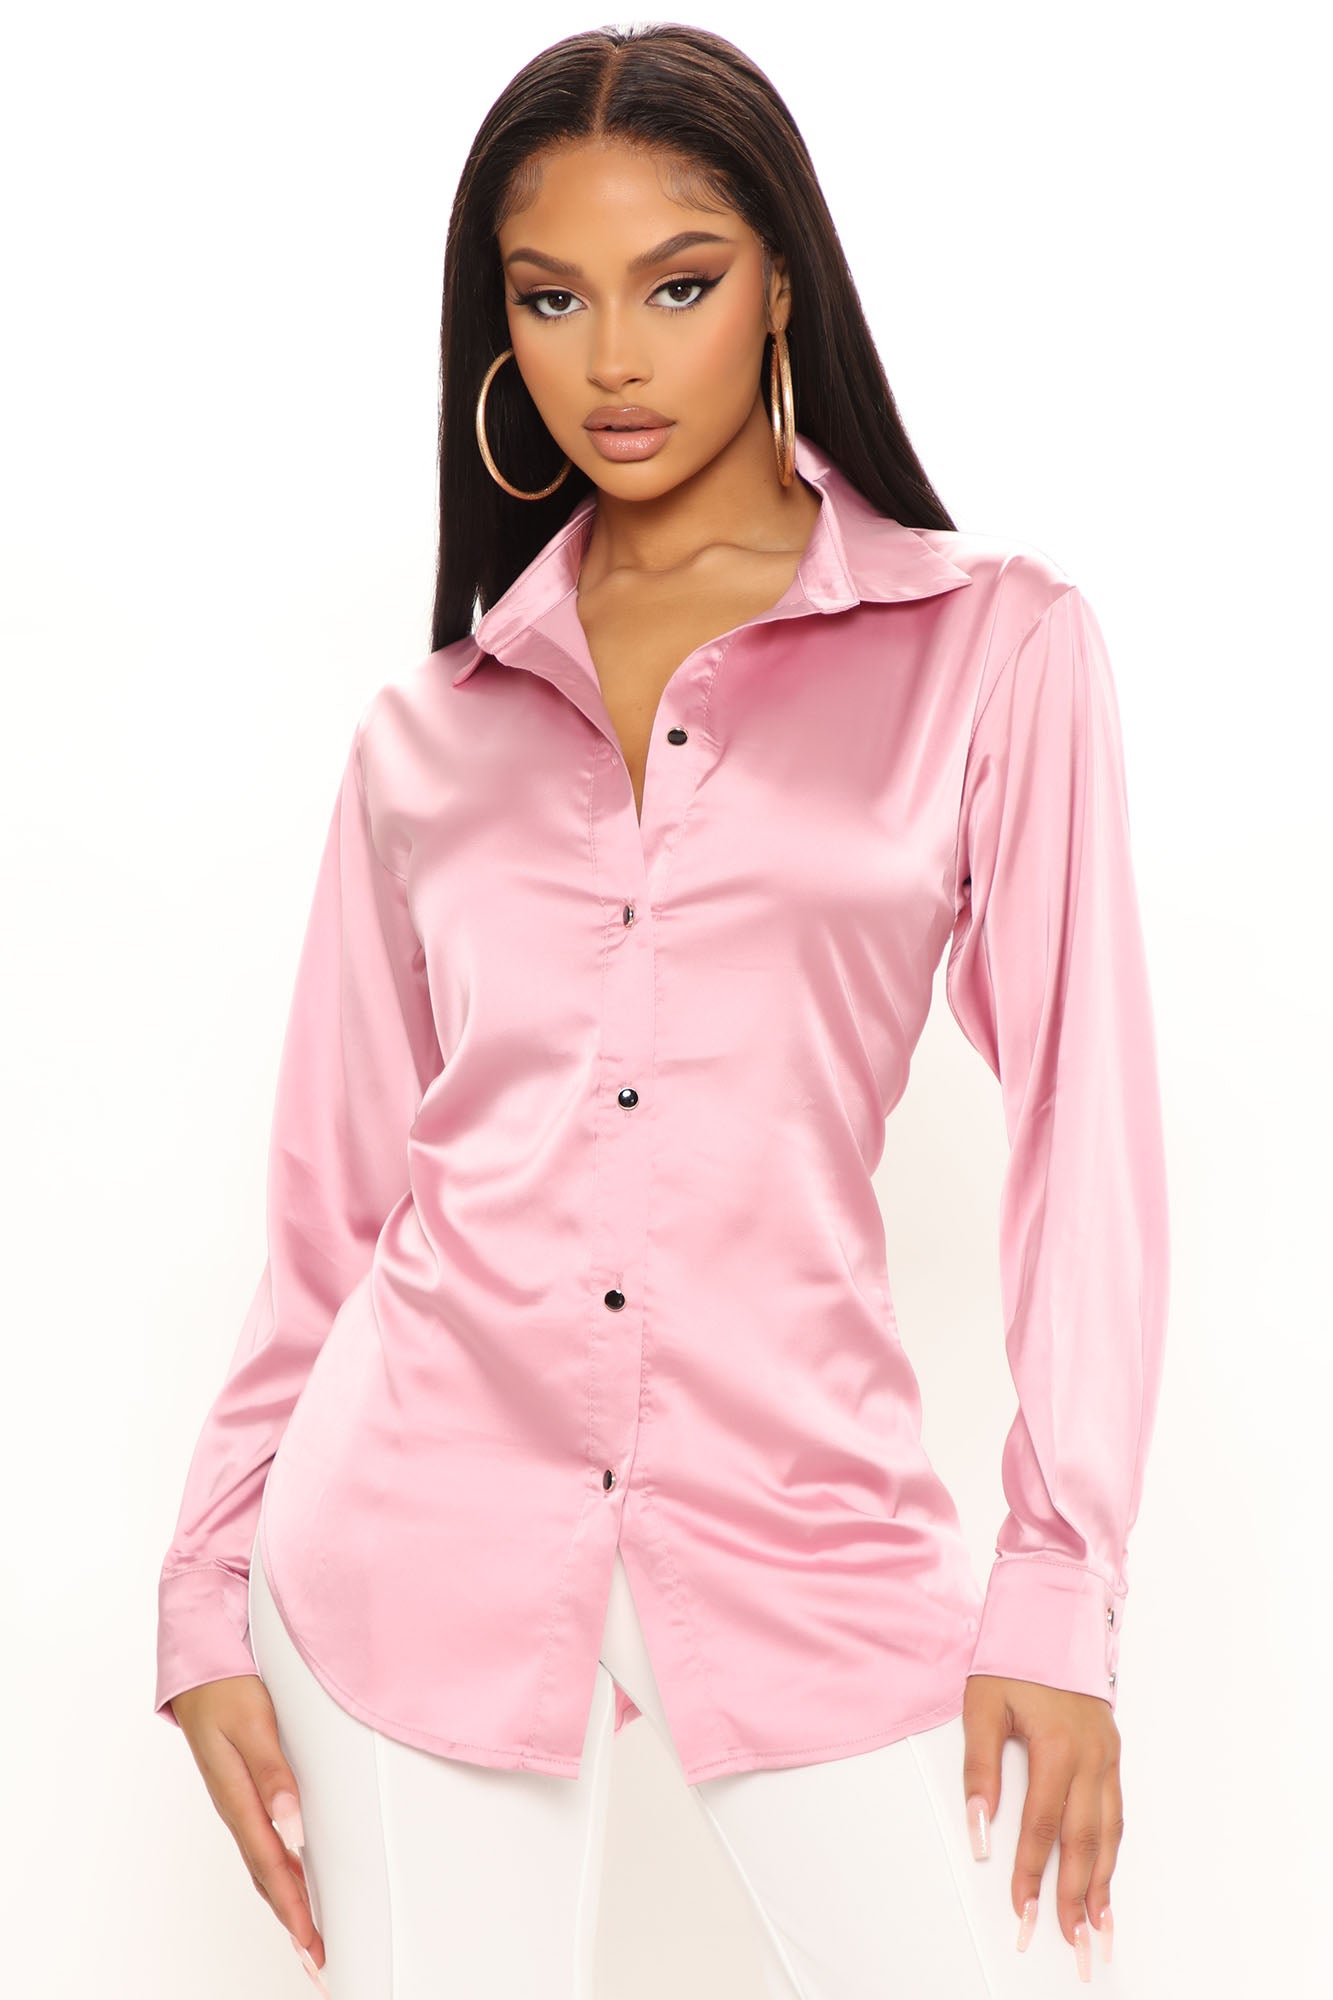 Too Sleek For You Satin Top - Mauve | Fashion Nova, Shirts